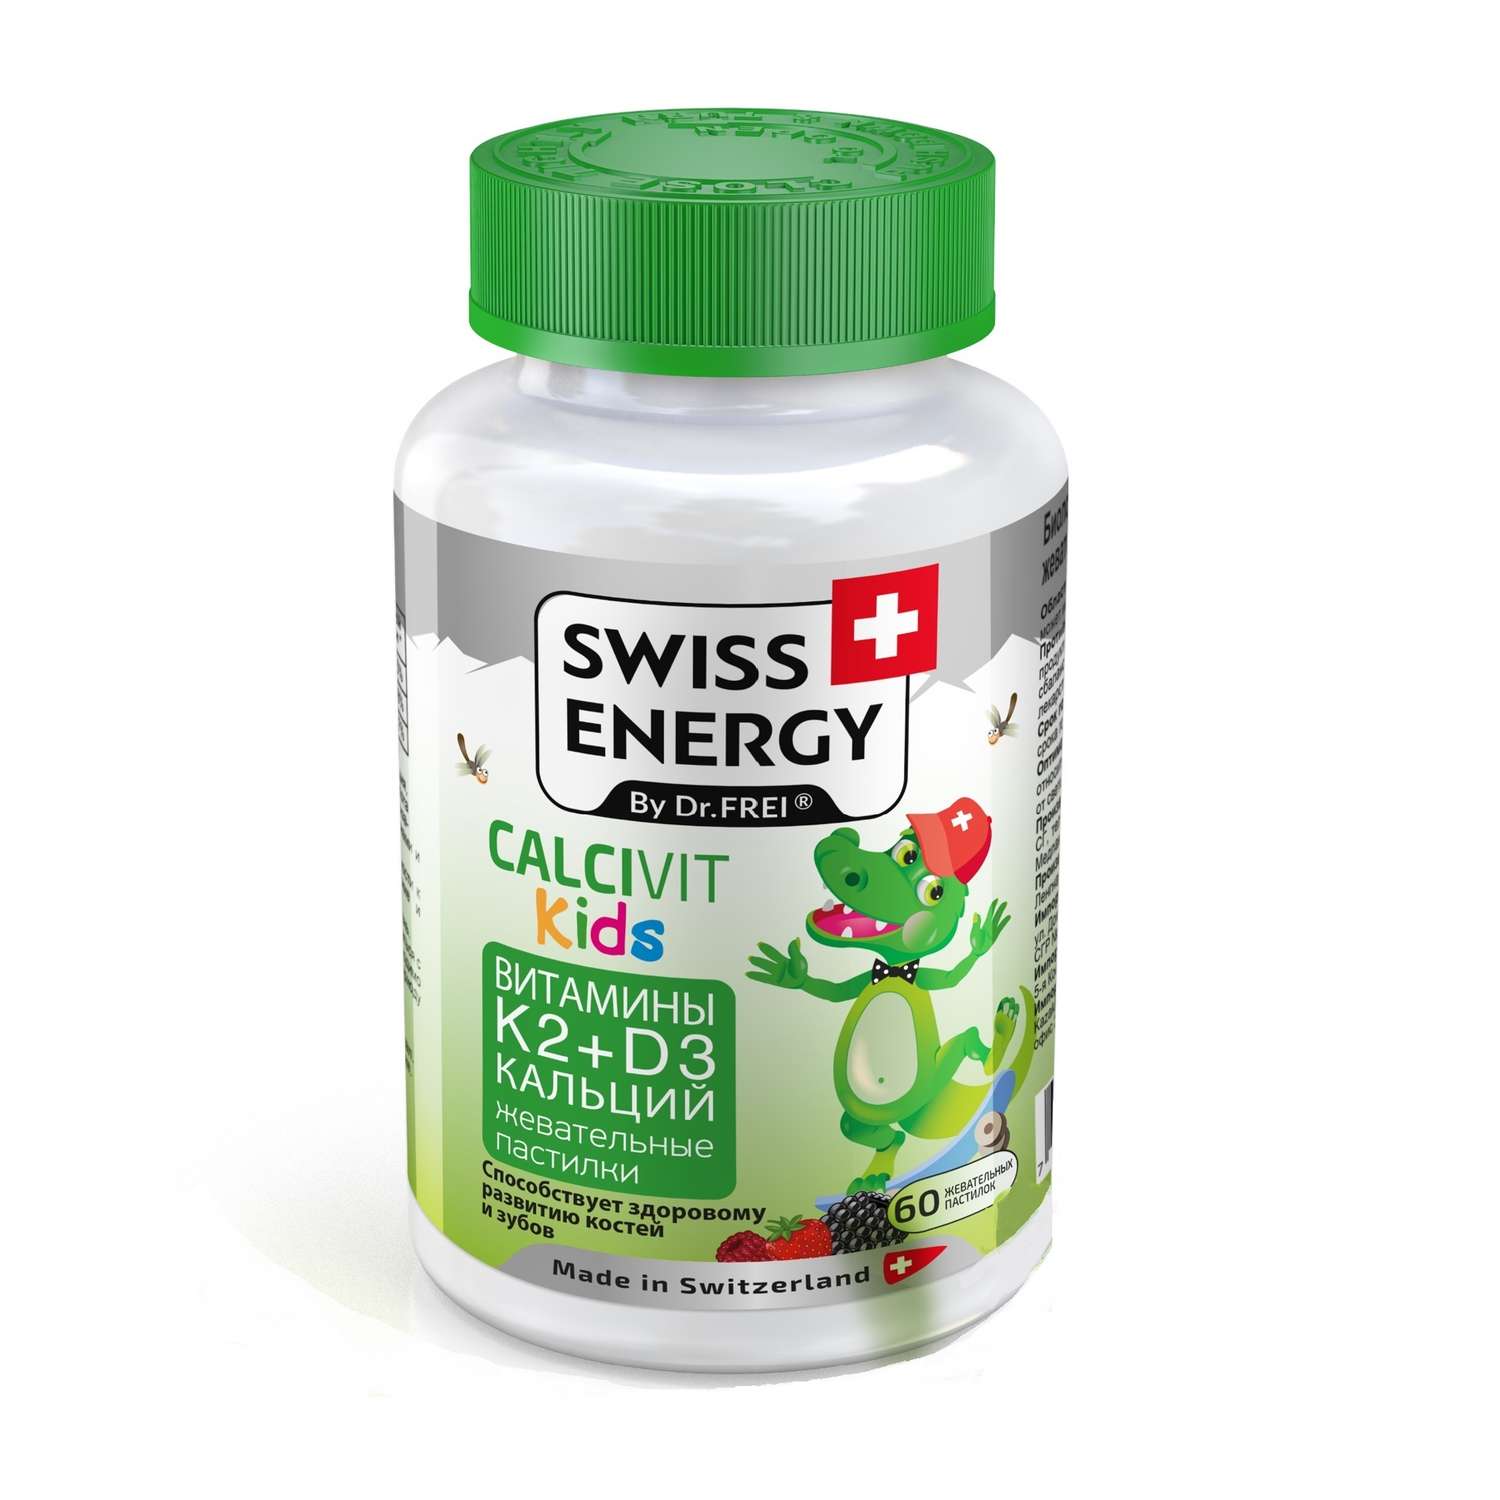 Биологически активная добавка Swiss Energy Cflcevit Kids 60капcул - фото 1